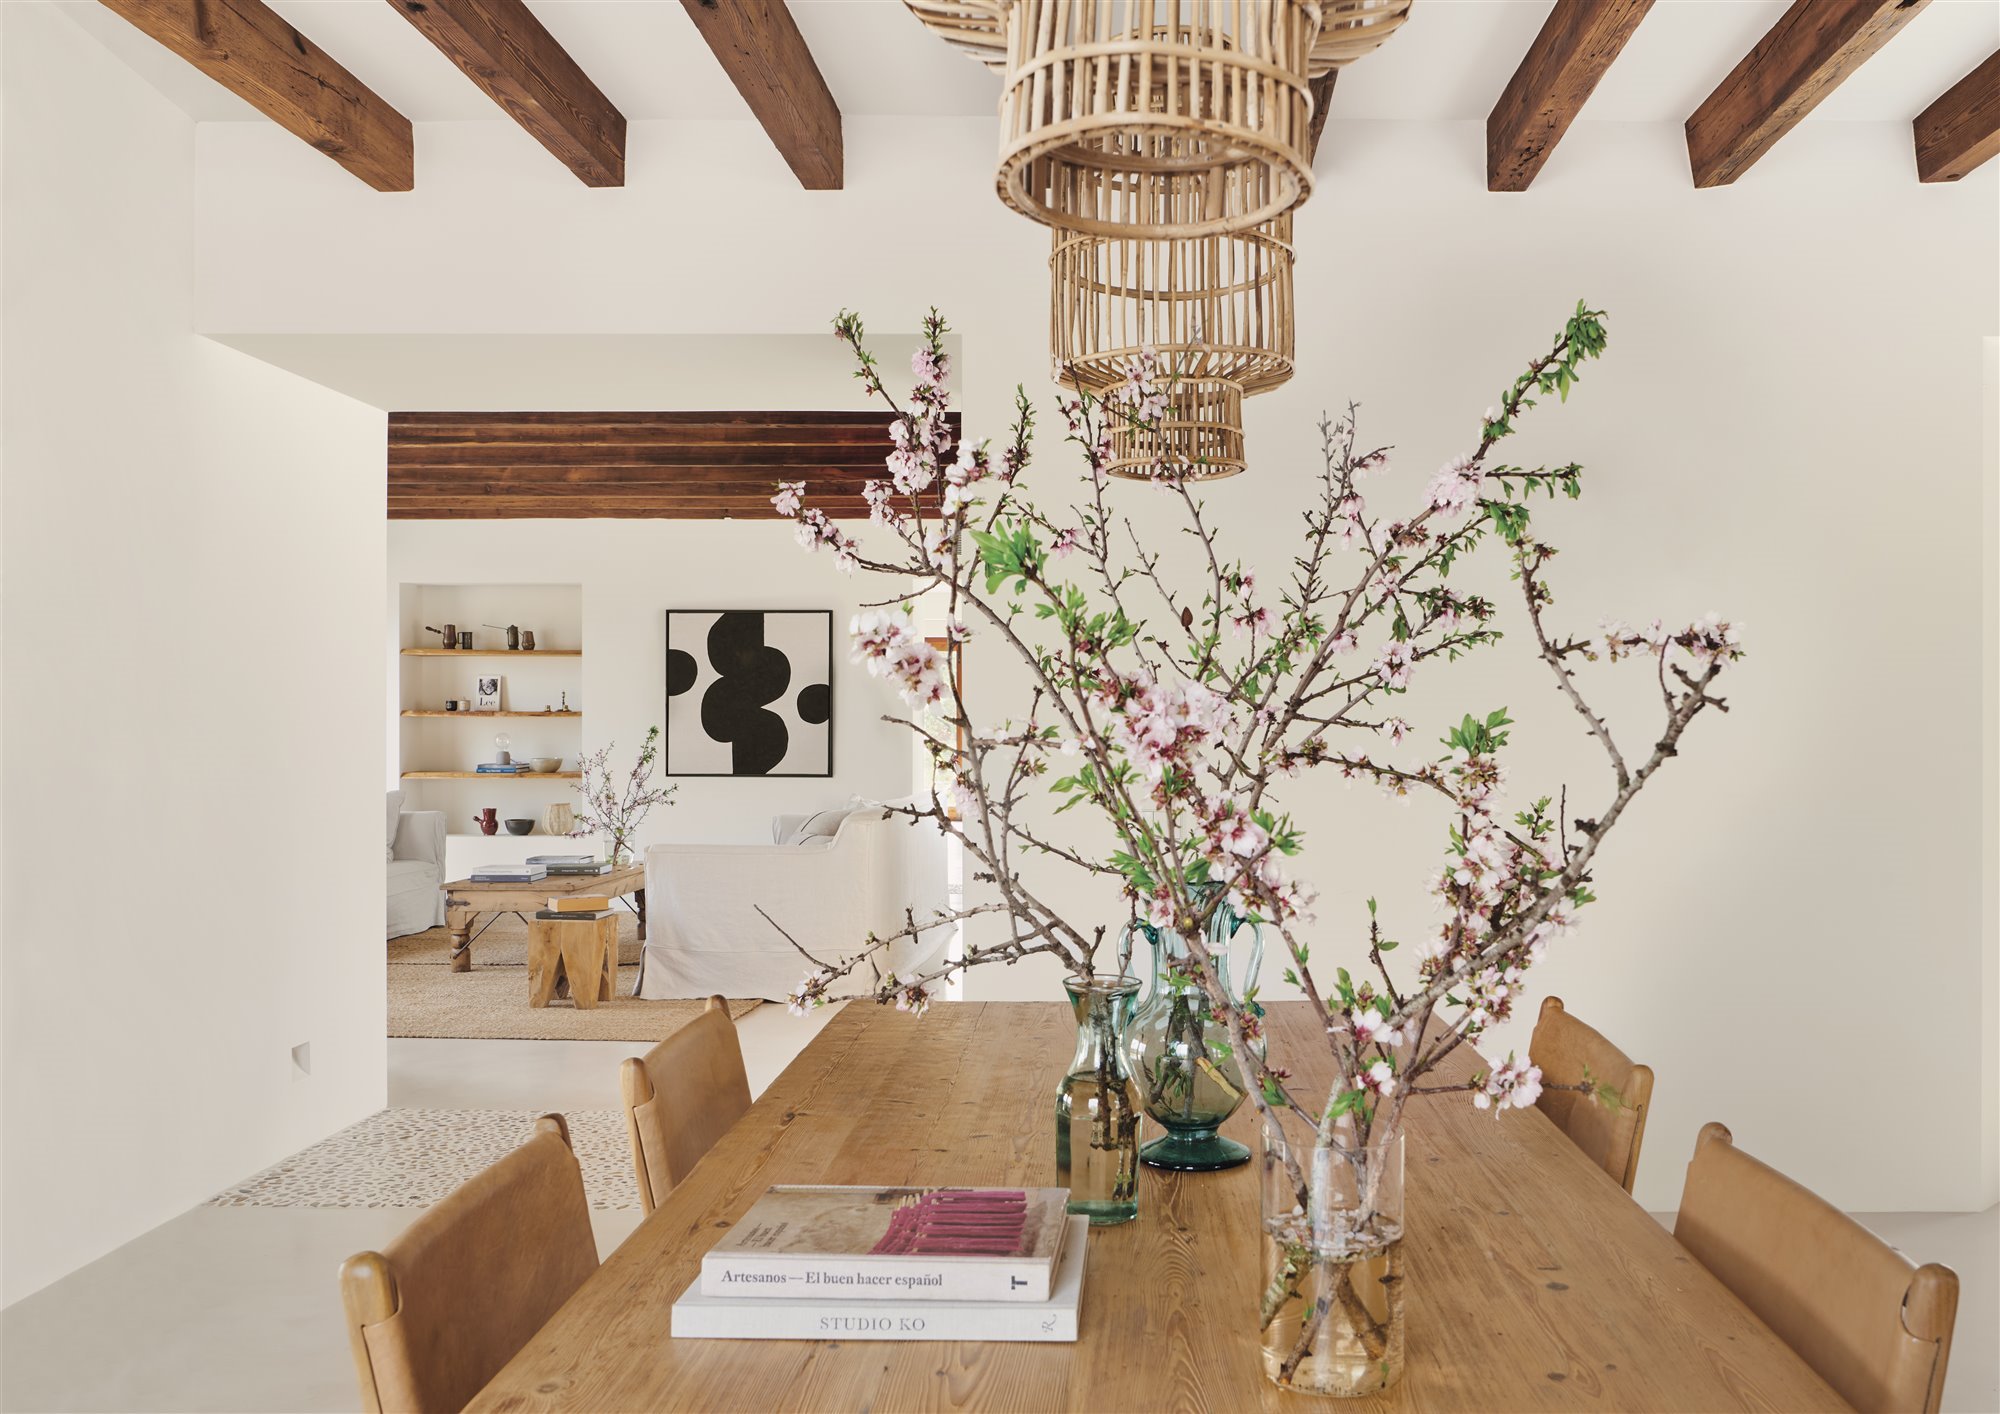 Comedor de una casa moderna con mesa de madera y jarrones con flores de cerezo